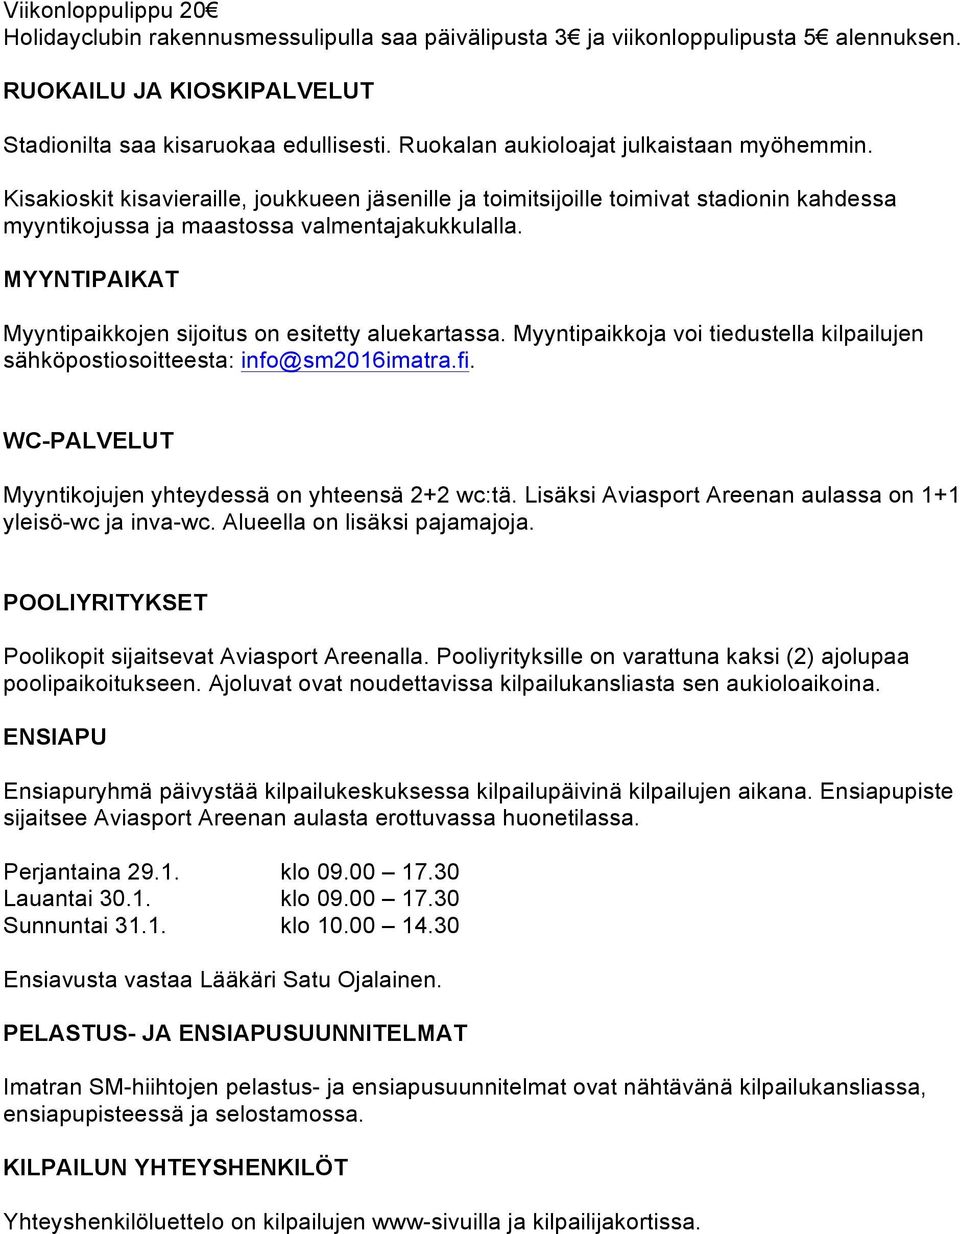 MYYNTIPAIKAT Myyntipaikkojen sijoitus on esitetty aluekartassa. Myyntipaikkoja voi tiedustella kilpailujen sähköpostiosoitteesta: info@sm2016imatra.fi.